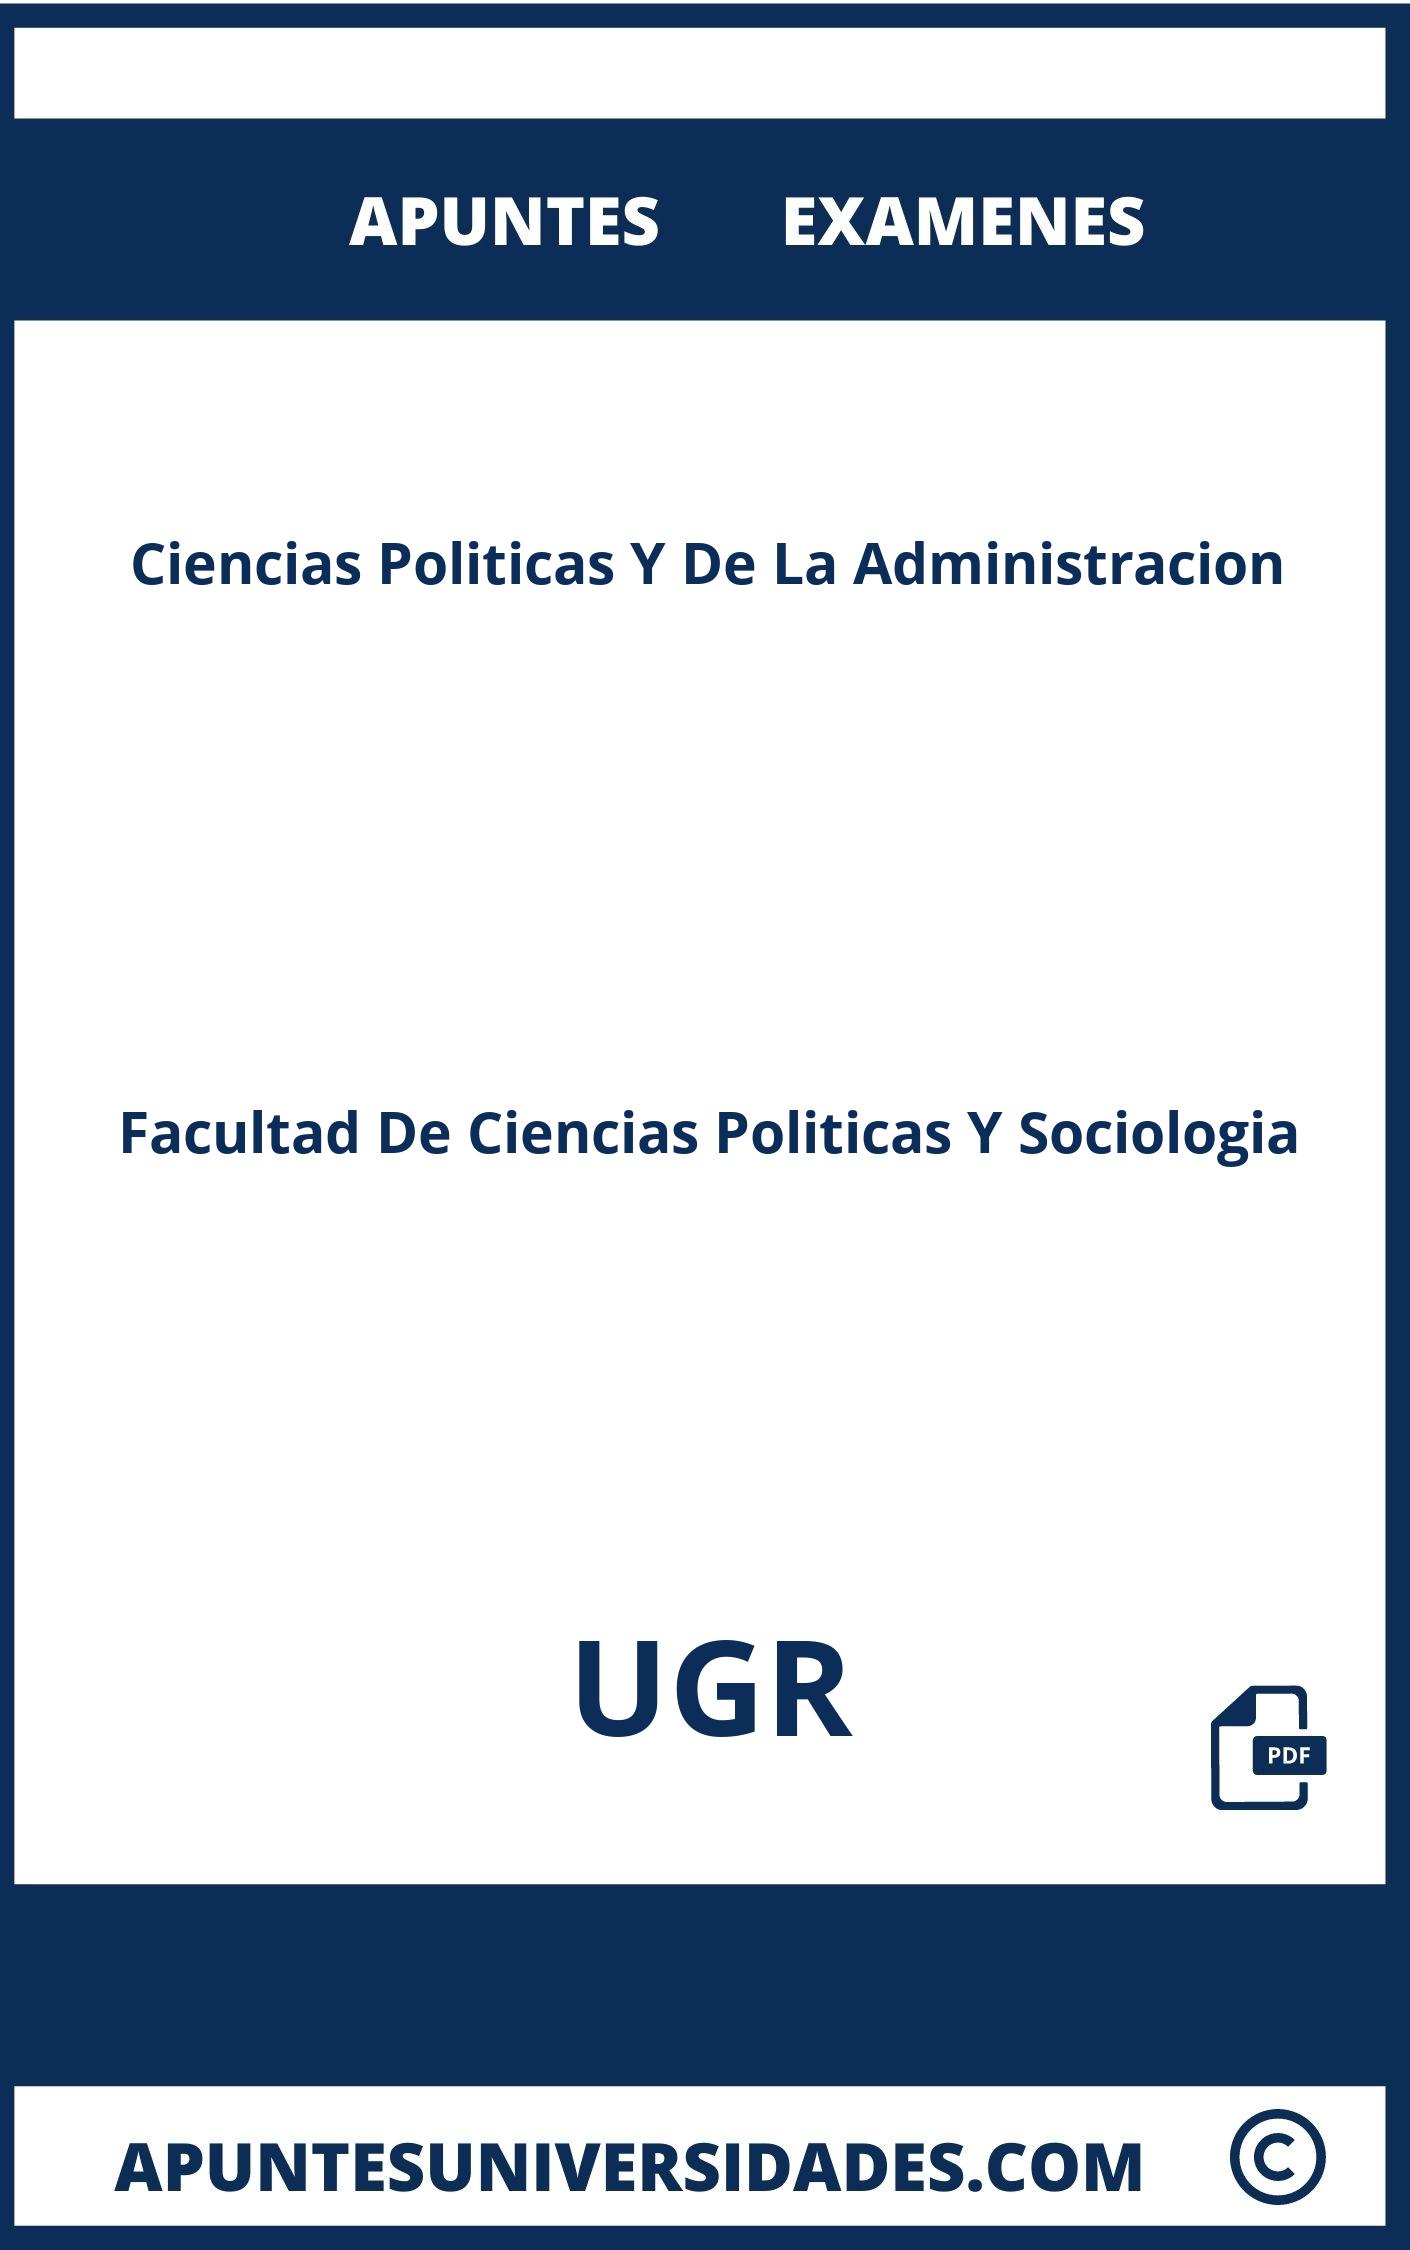 Examenes y Apuntes de Ciencias Politicas Y De La Administracion UGR